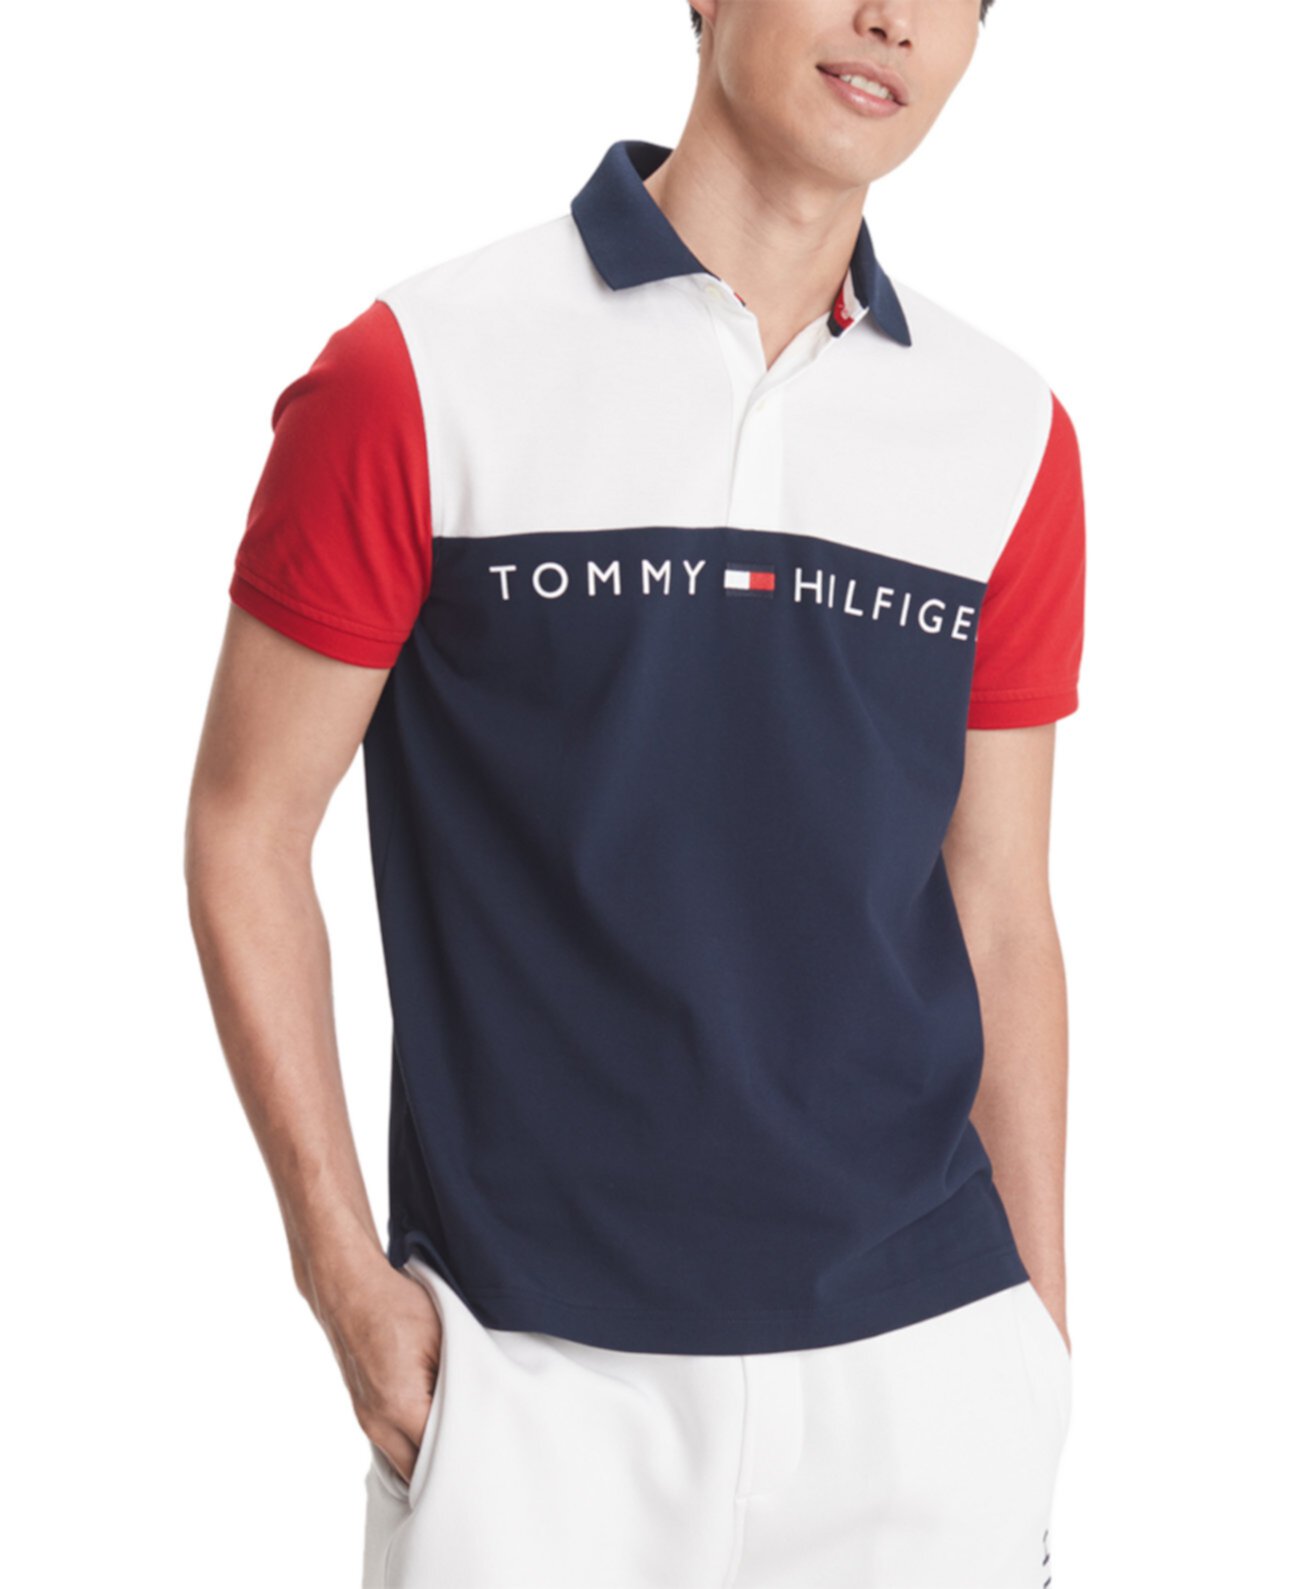 Мужская футболка-поло с графическим логотипом Turner, созданная для Macy's Tommy Hilfiger